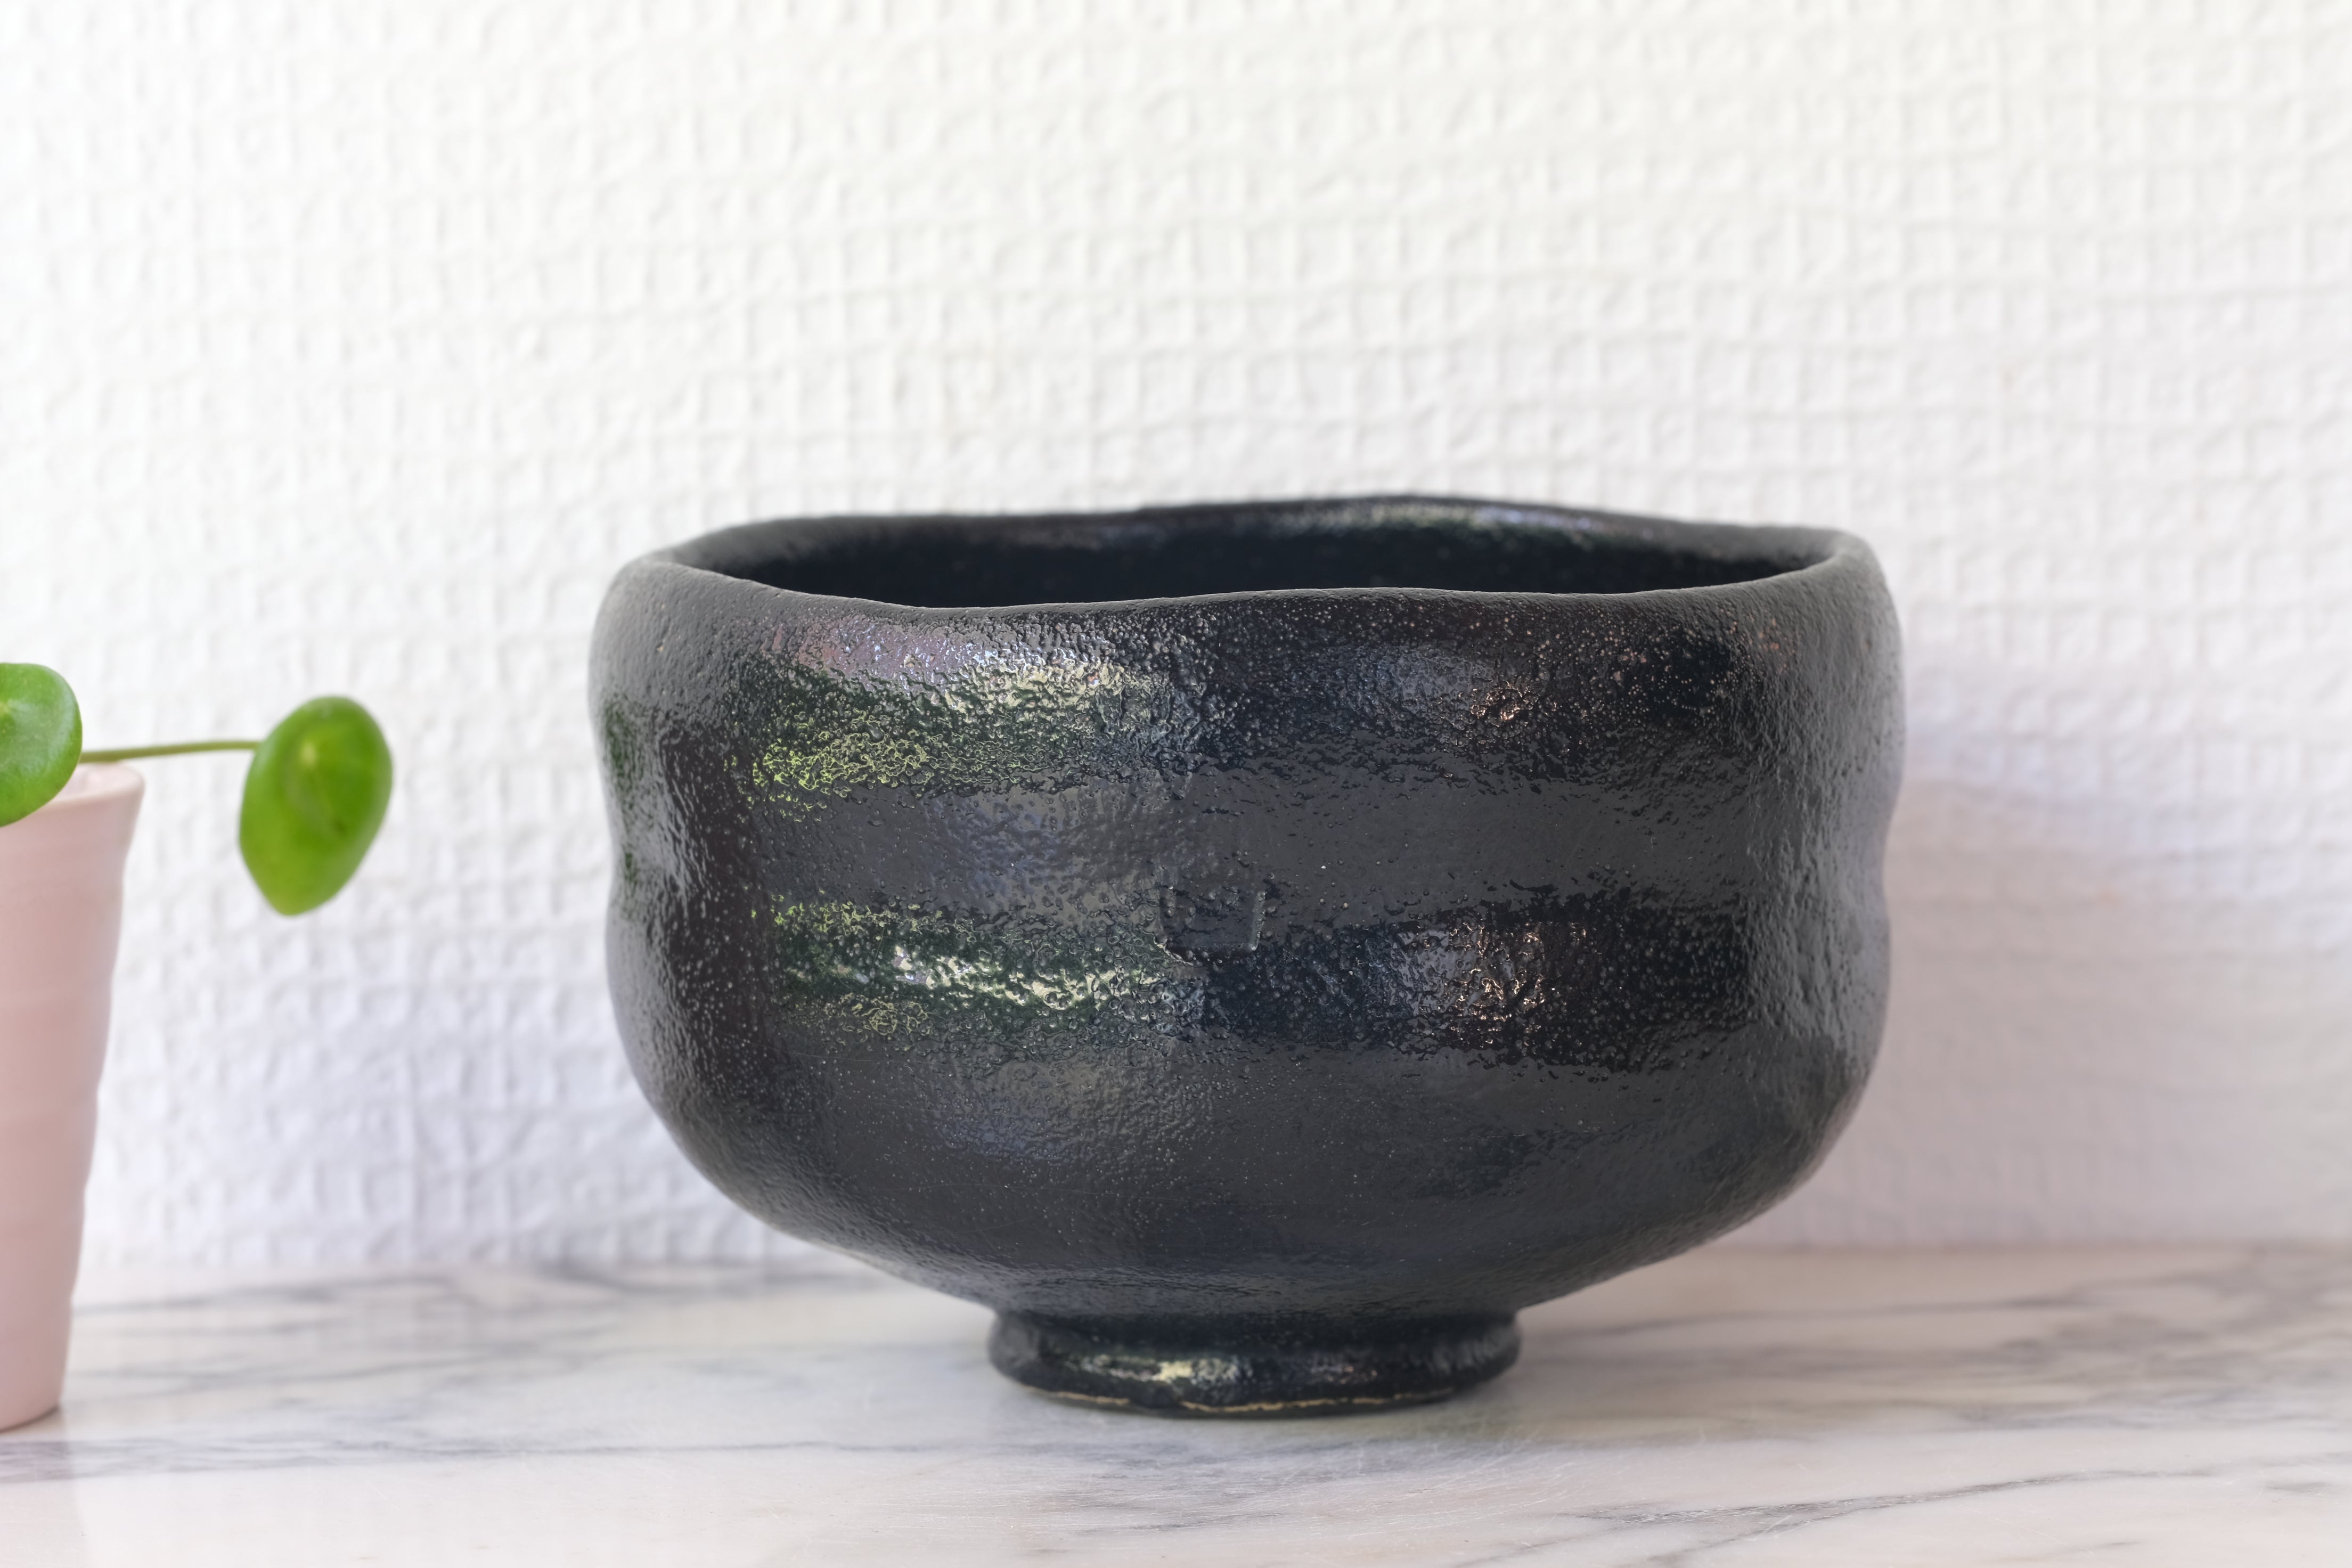 Japanese Ceramic Tea Bowl by Yamashita Toshiaki 山下才彰 (1944-) | 8 cm